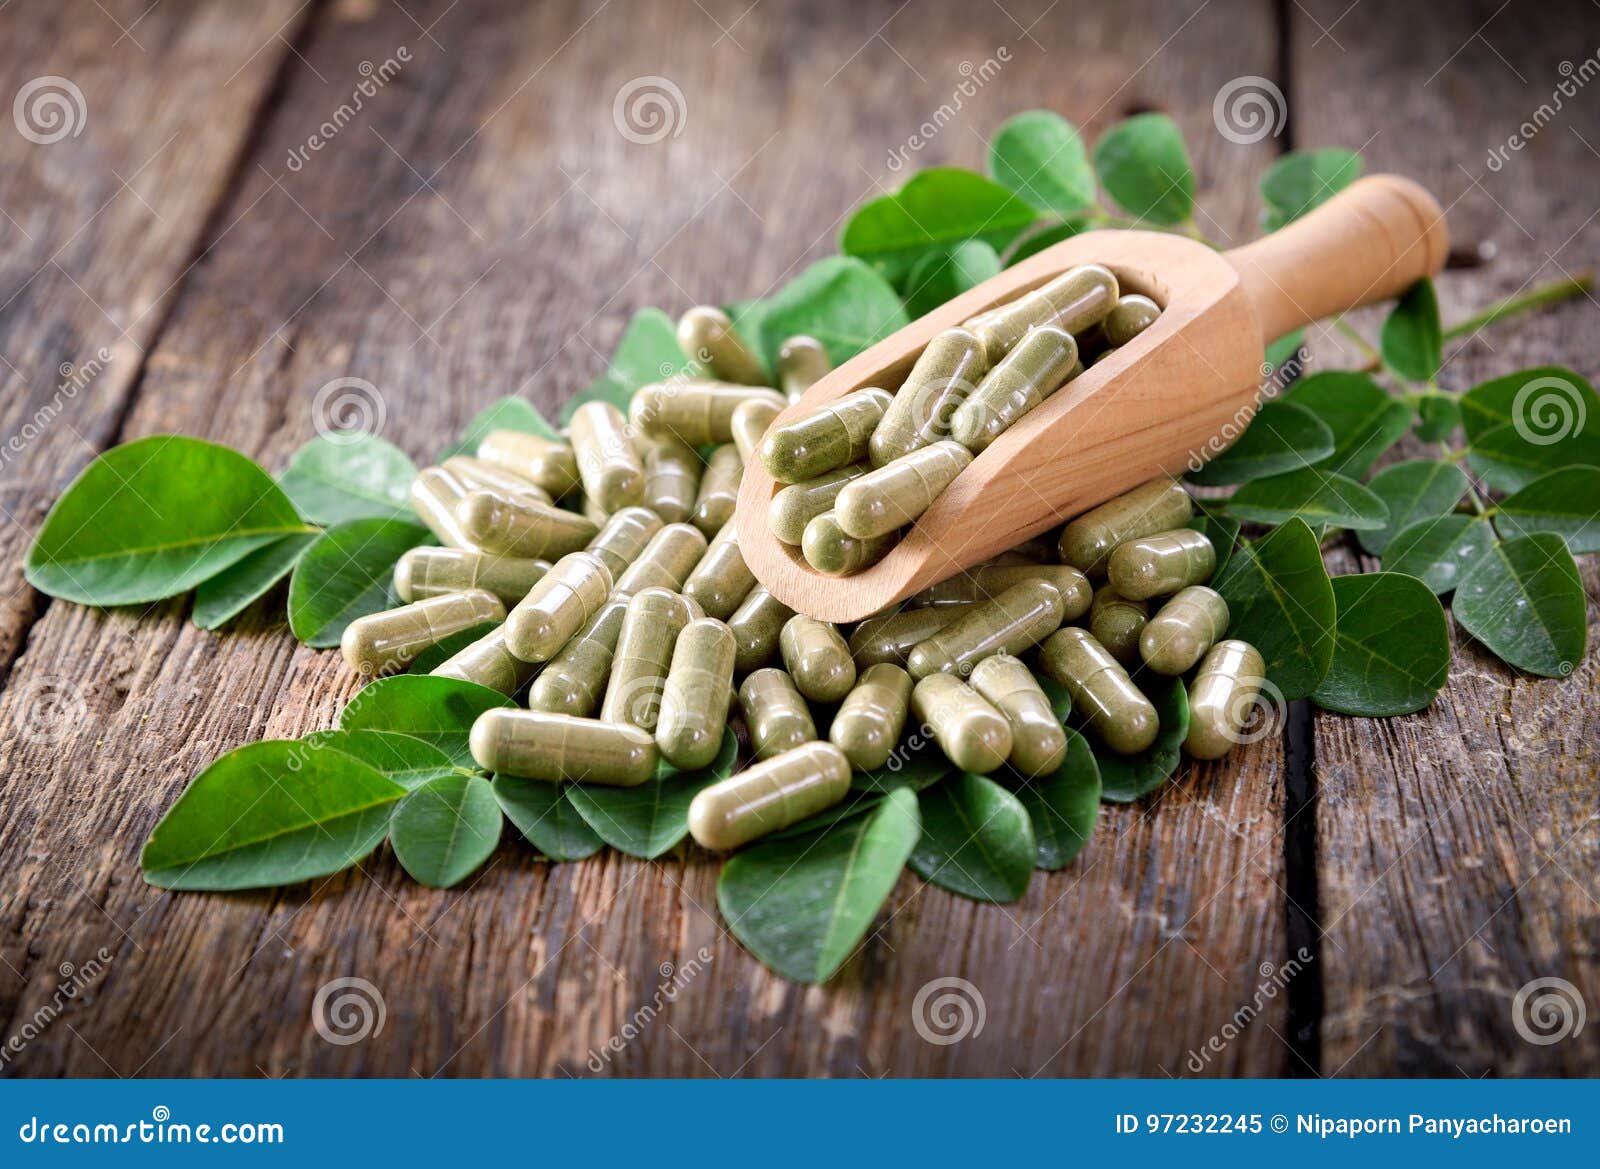 moringa leaves and capsules